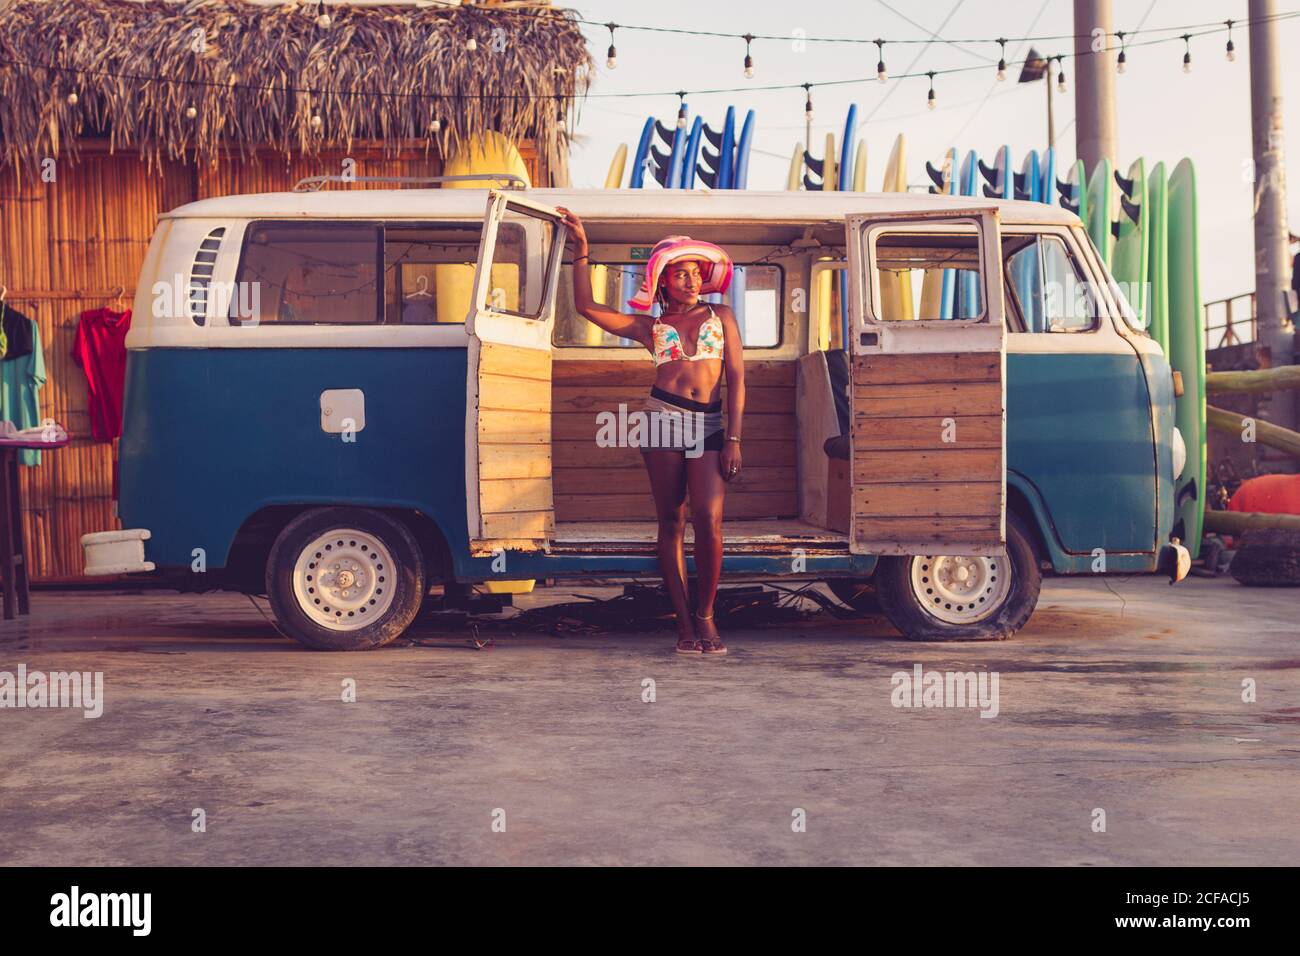 Junge afroamerikanische Besitzerin von lokalen Surfbrettverleih Tragen bunte Bikini-Top und Hut neben Vintage stehen Van mit Reihe von Surfbrettern im Hintergrund Stockfoto